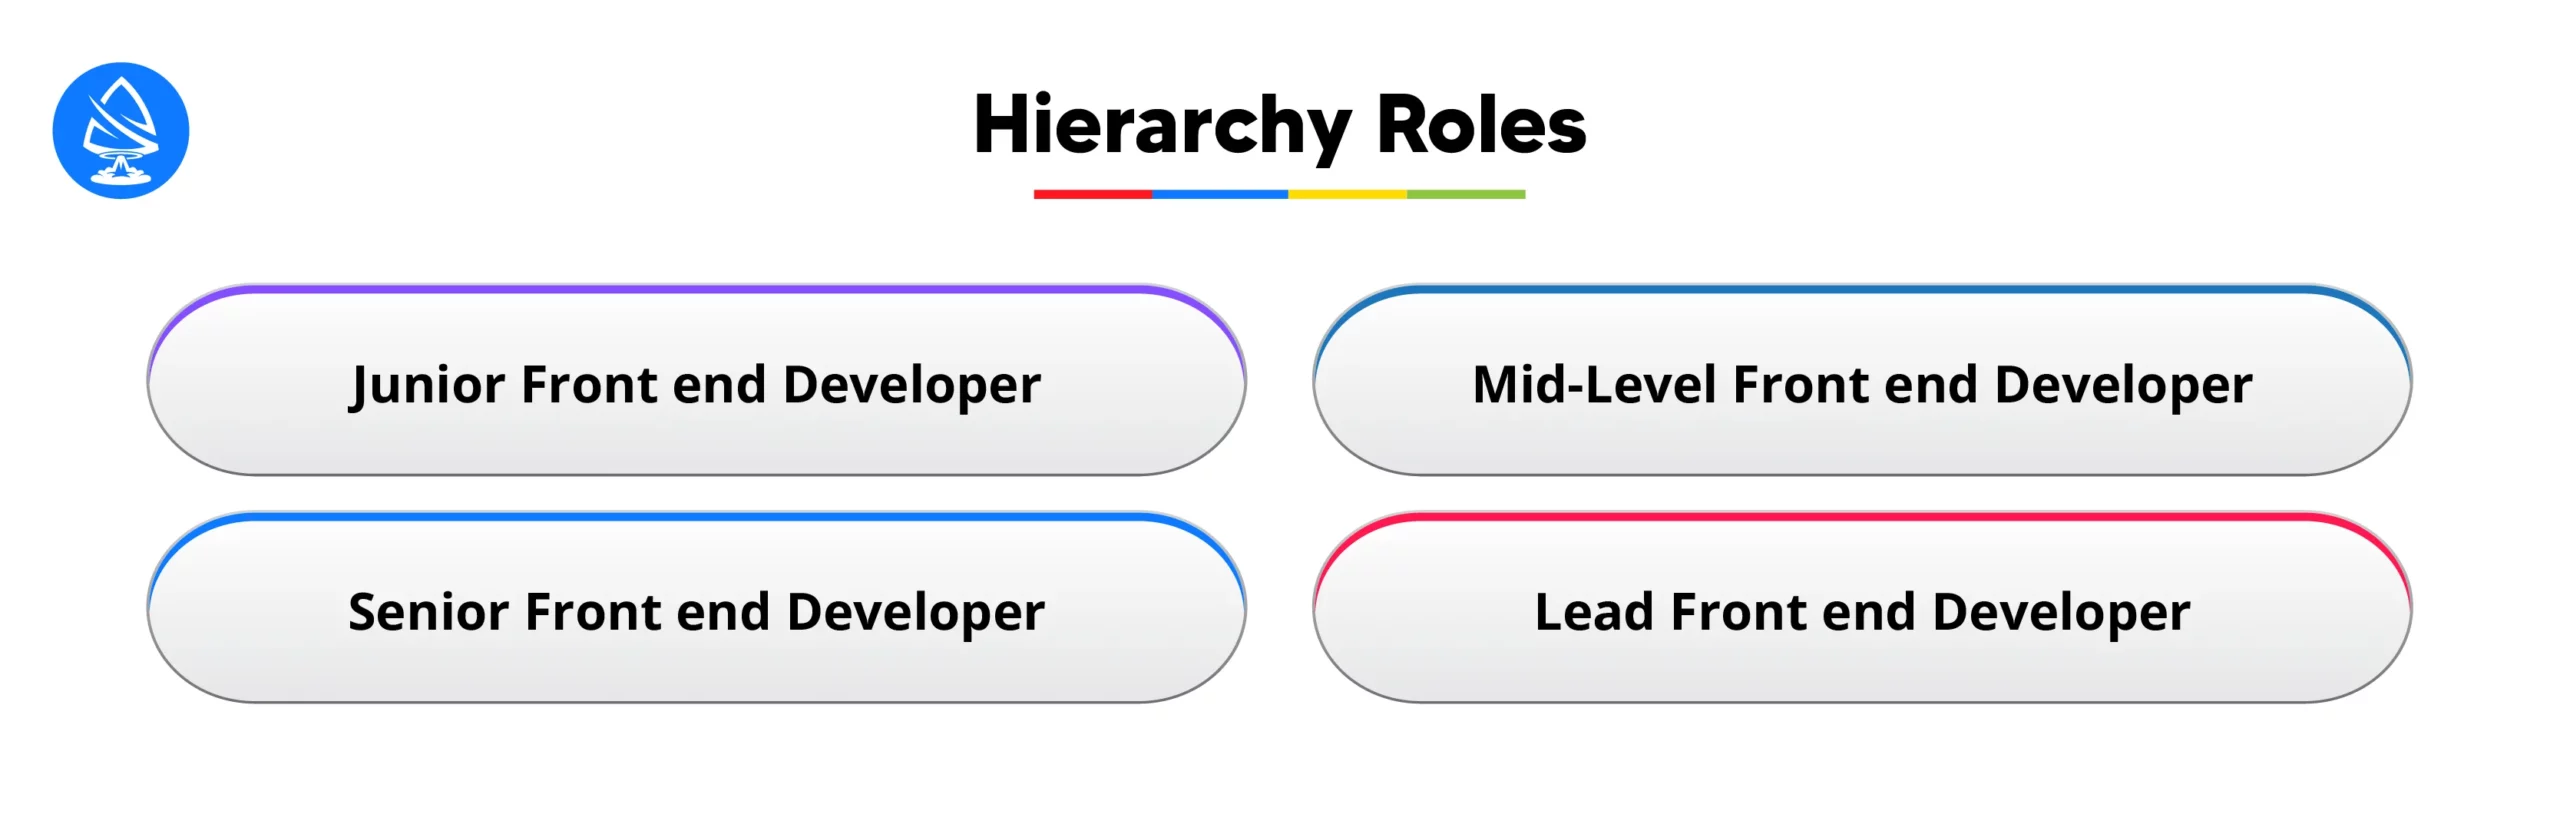 Hierarchy Roles